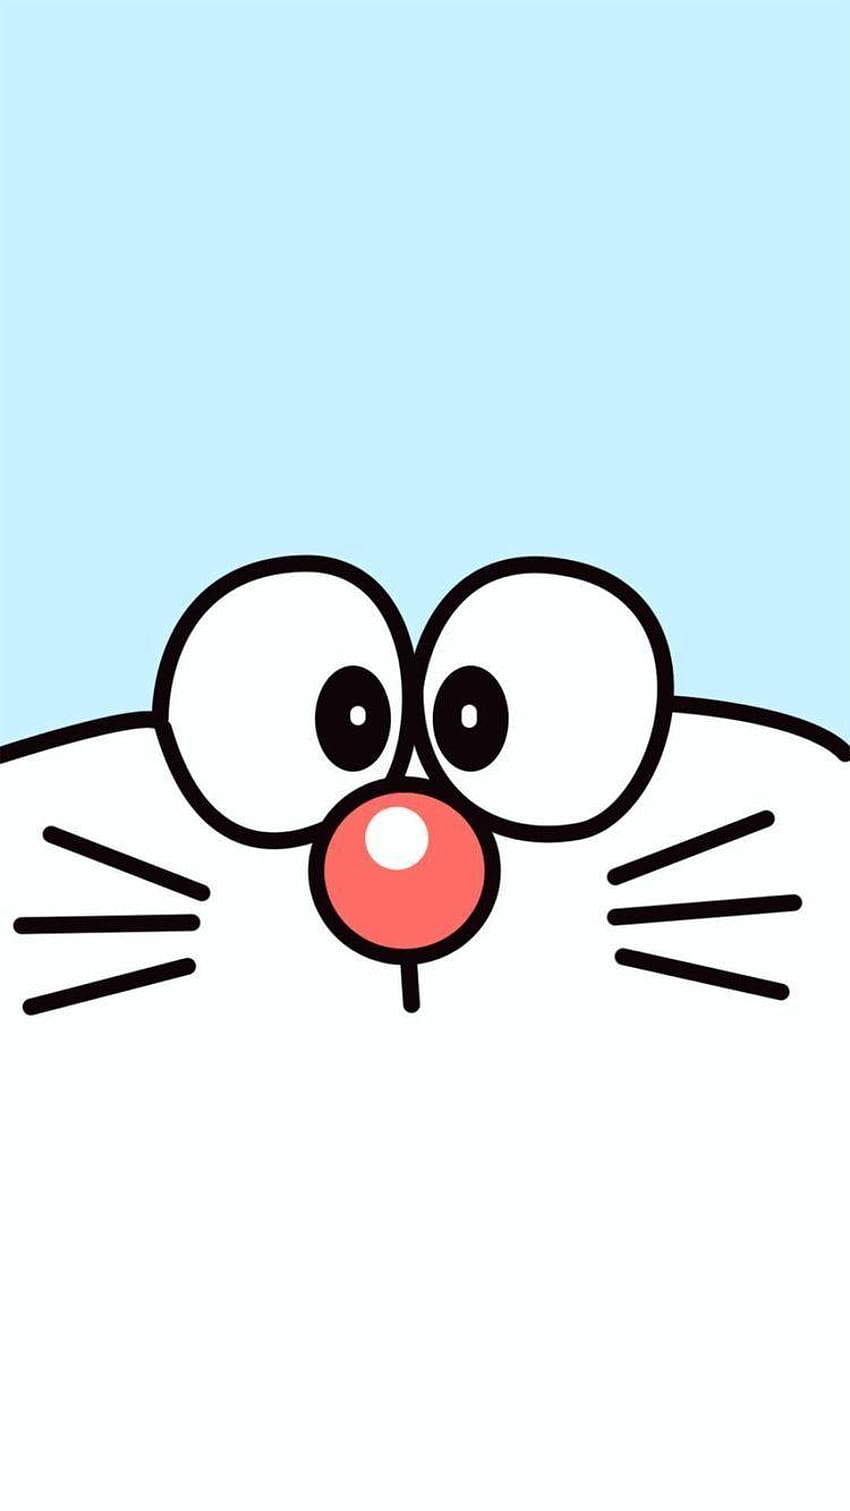 Tận hưởng trải nghiệm hình nền iPhone độc đáo với chủ đề Doraemon. Với độ phân giải cao và màu sắc sáng tạo, bạn sẽ tận hưởng một màn hình độc đáo và tuyệt đẹp. Hãy nhanh chóng tìm kiếm những bức ảnh HD Doraemon để tận hưởng trên chiếc iPhone của bạn.